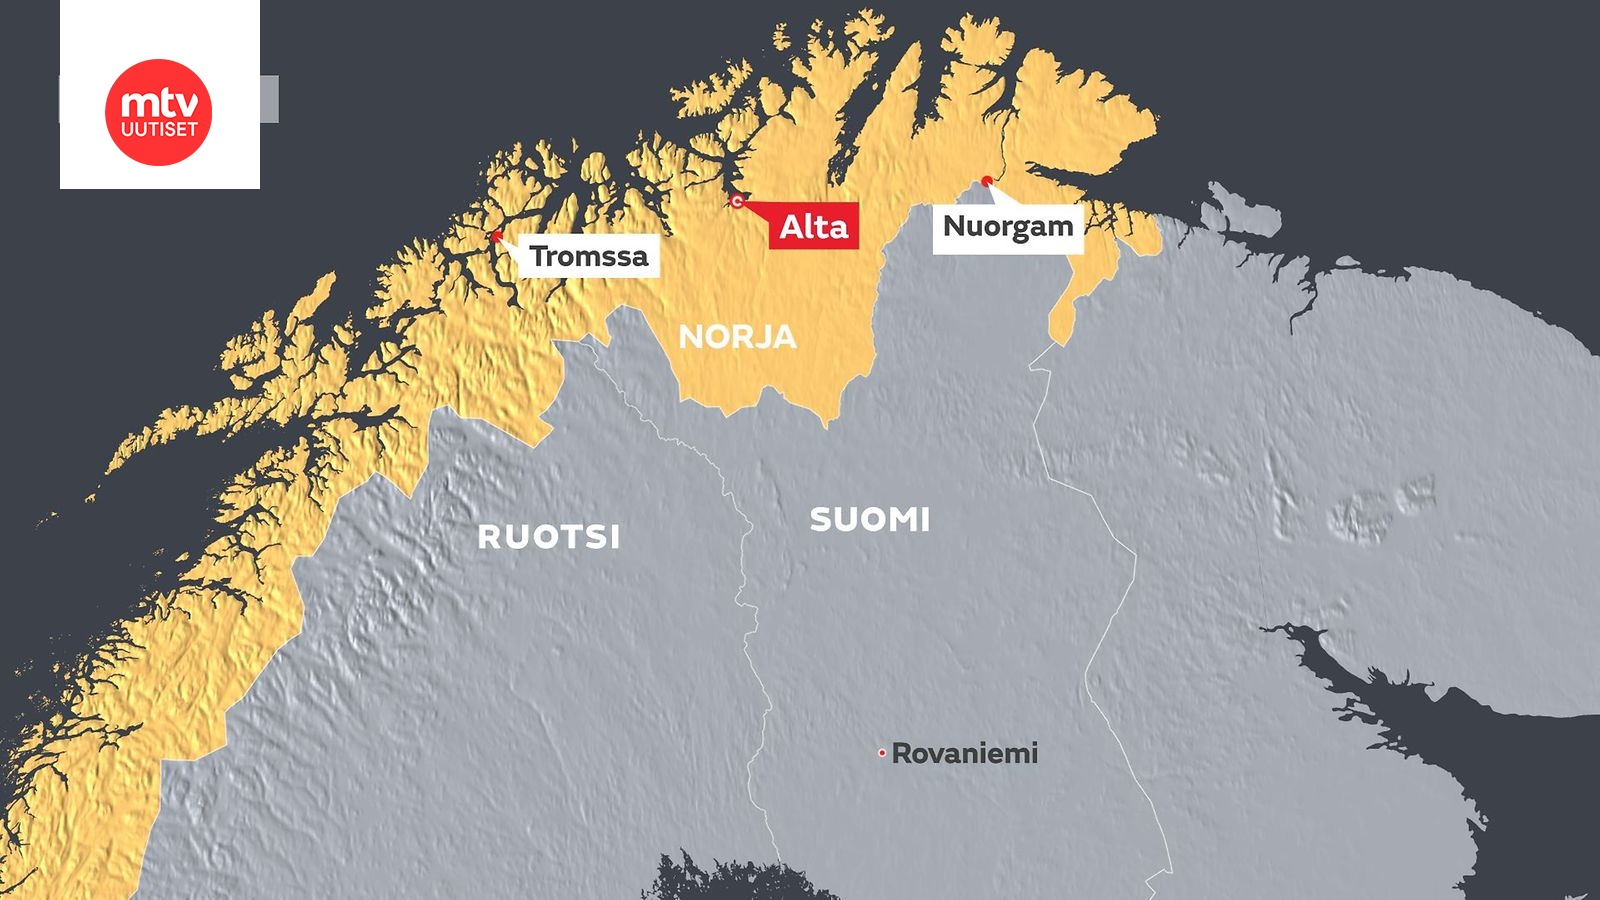 VG: Kaikki Norjan turmakopterissa olleet löydetty, ainakin neljä kuollutta  